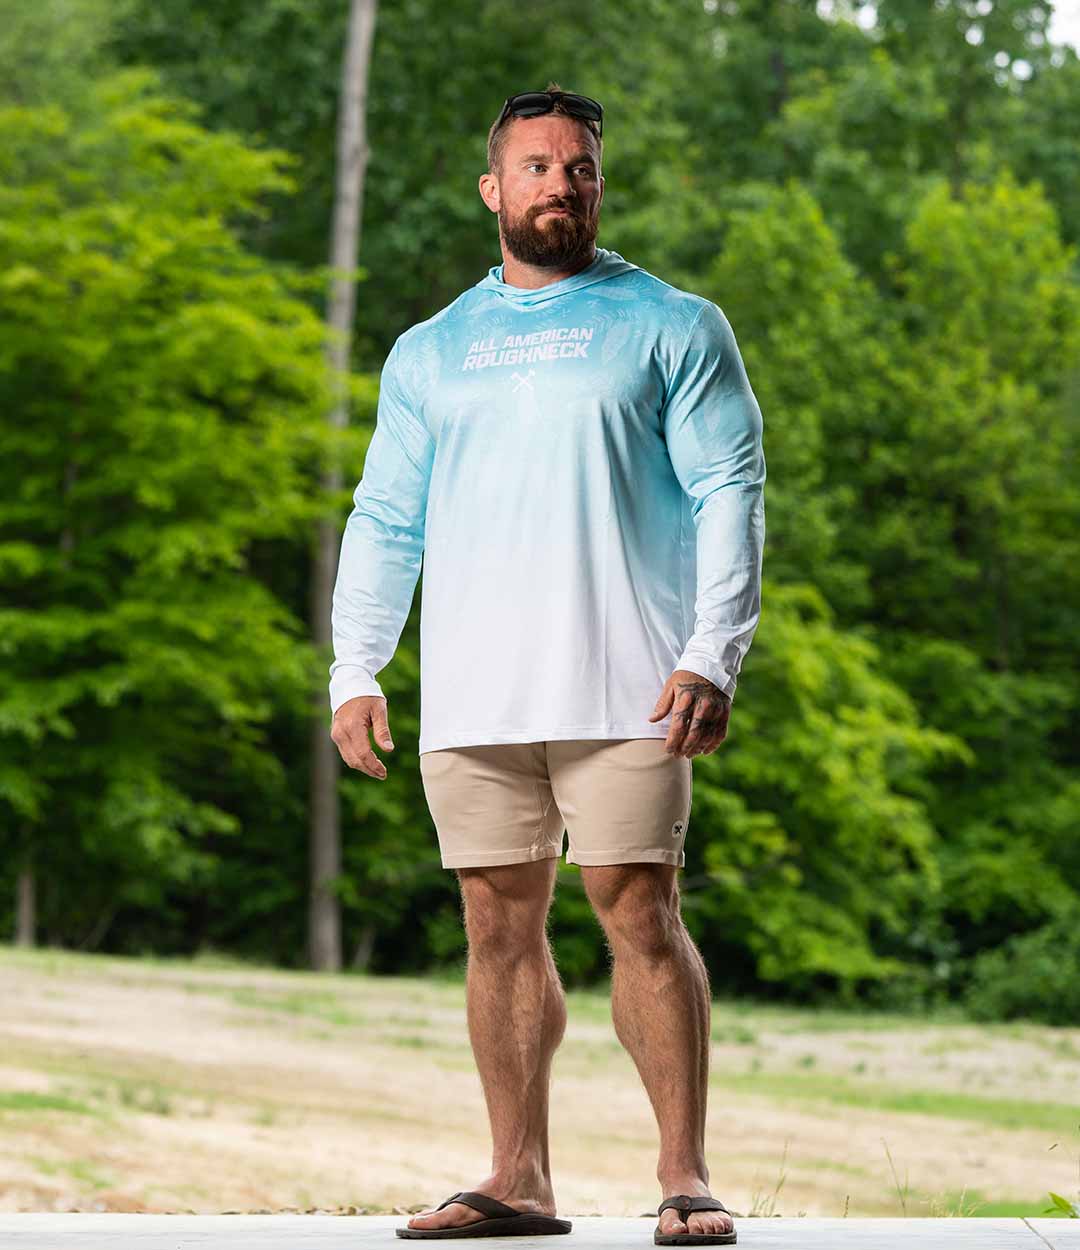 Men's Workout Shirts, Hoodies & Tanks for Fishing